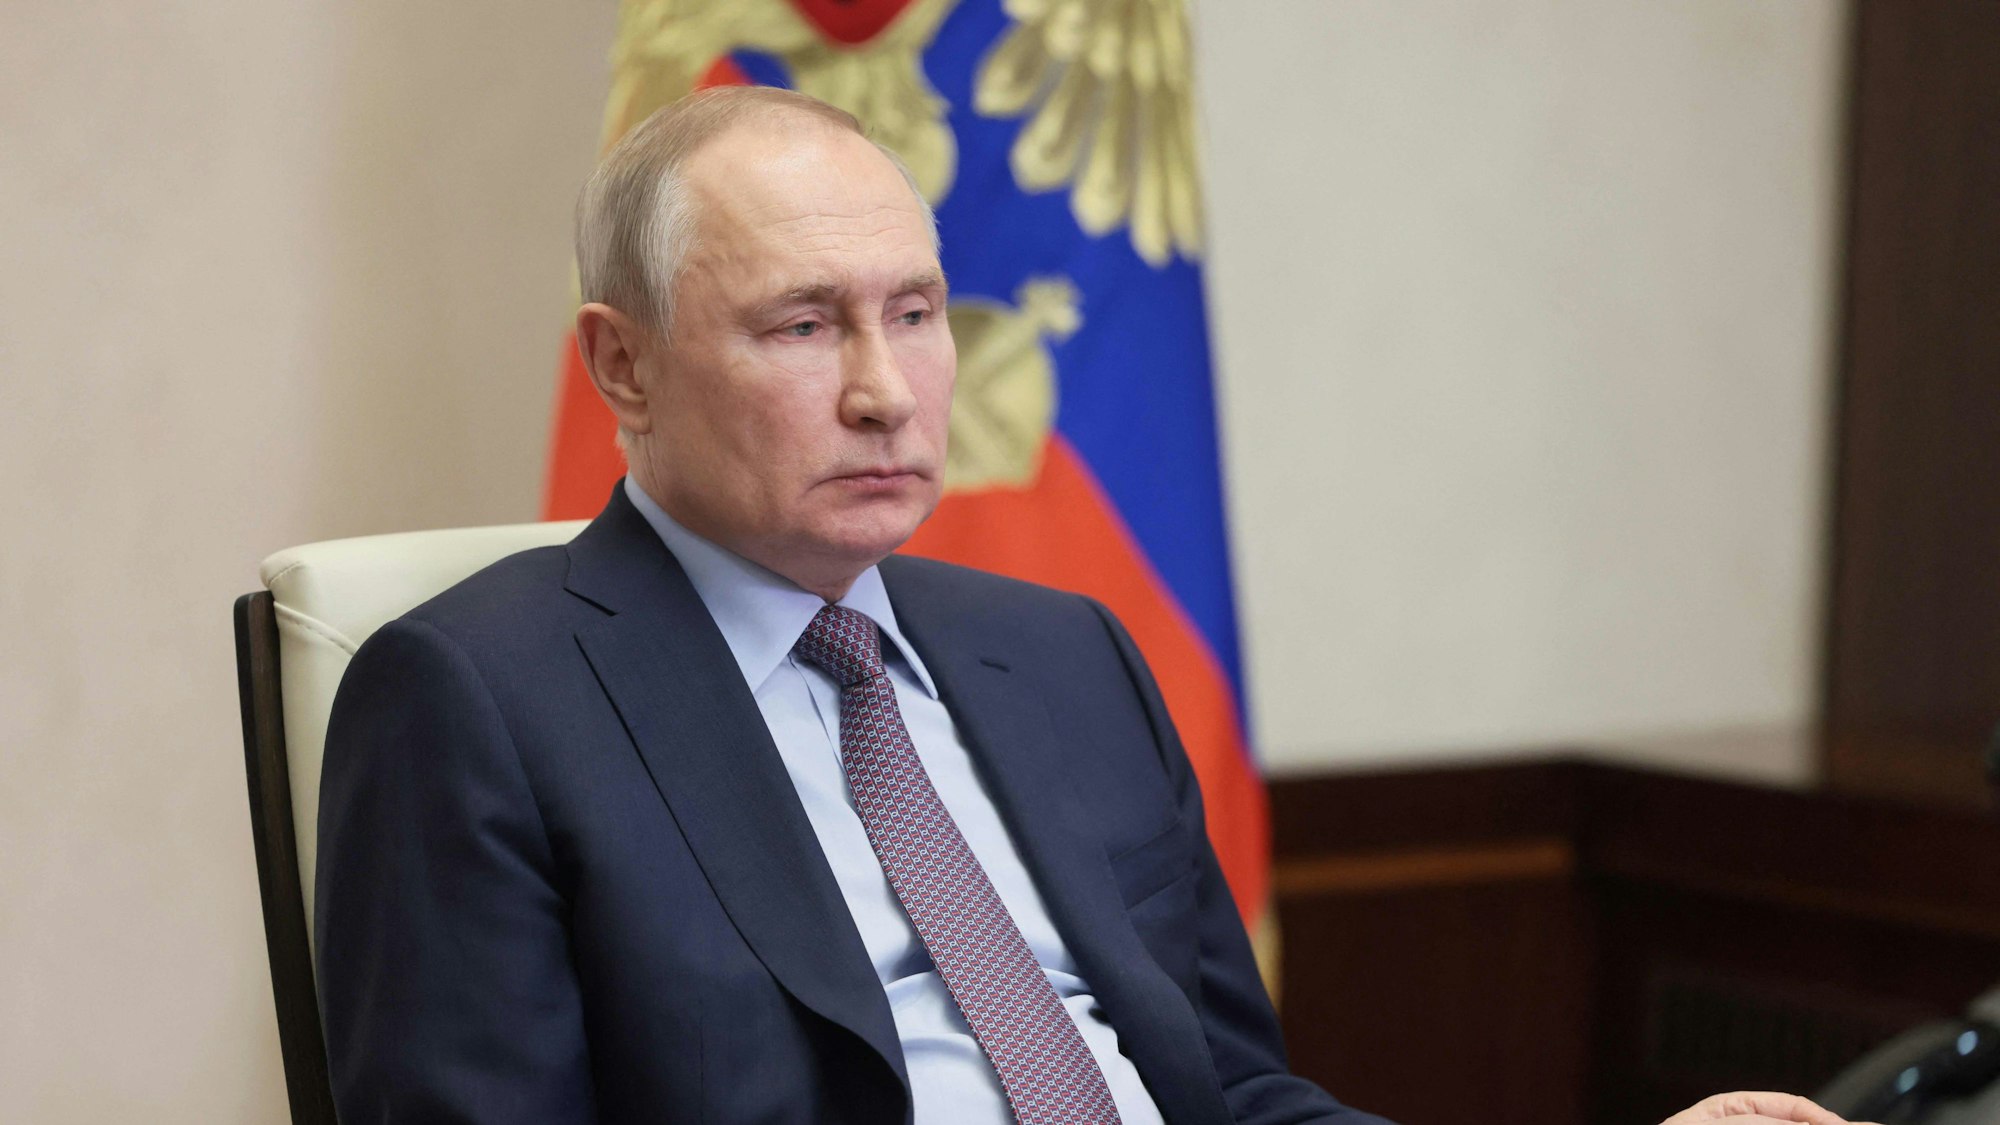 Der russische Präsident Wladimir Putin wird im Gespräch als „Trottel“ bezeichnet. Er kennt die mutmaßlich für das Gespräch verantwortlichen Oligarchen und wird einschätzen können, ob die Aussagen authentisch sind. (Symbolbild)